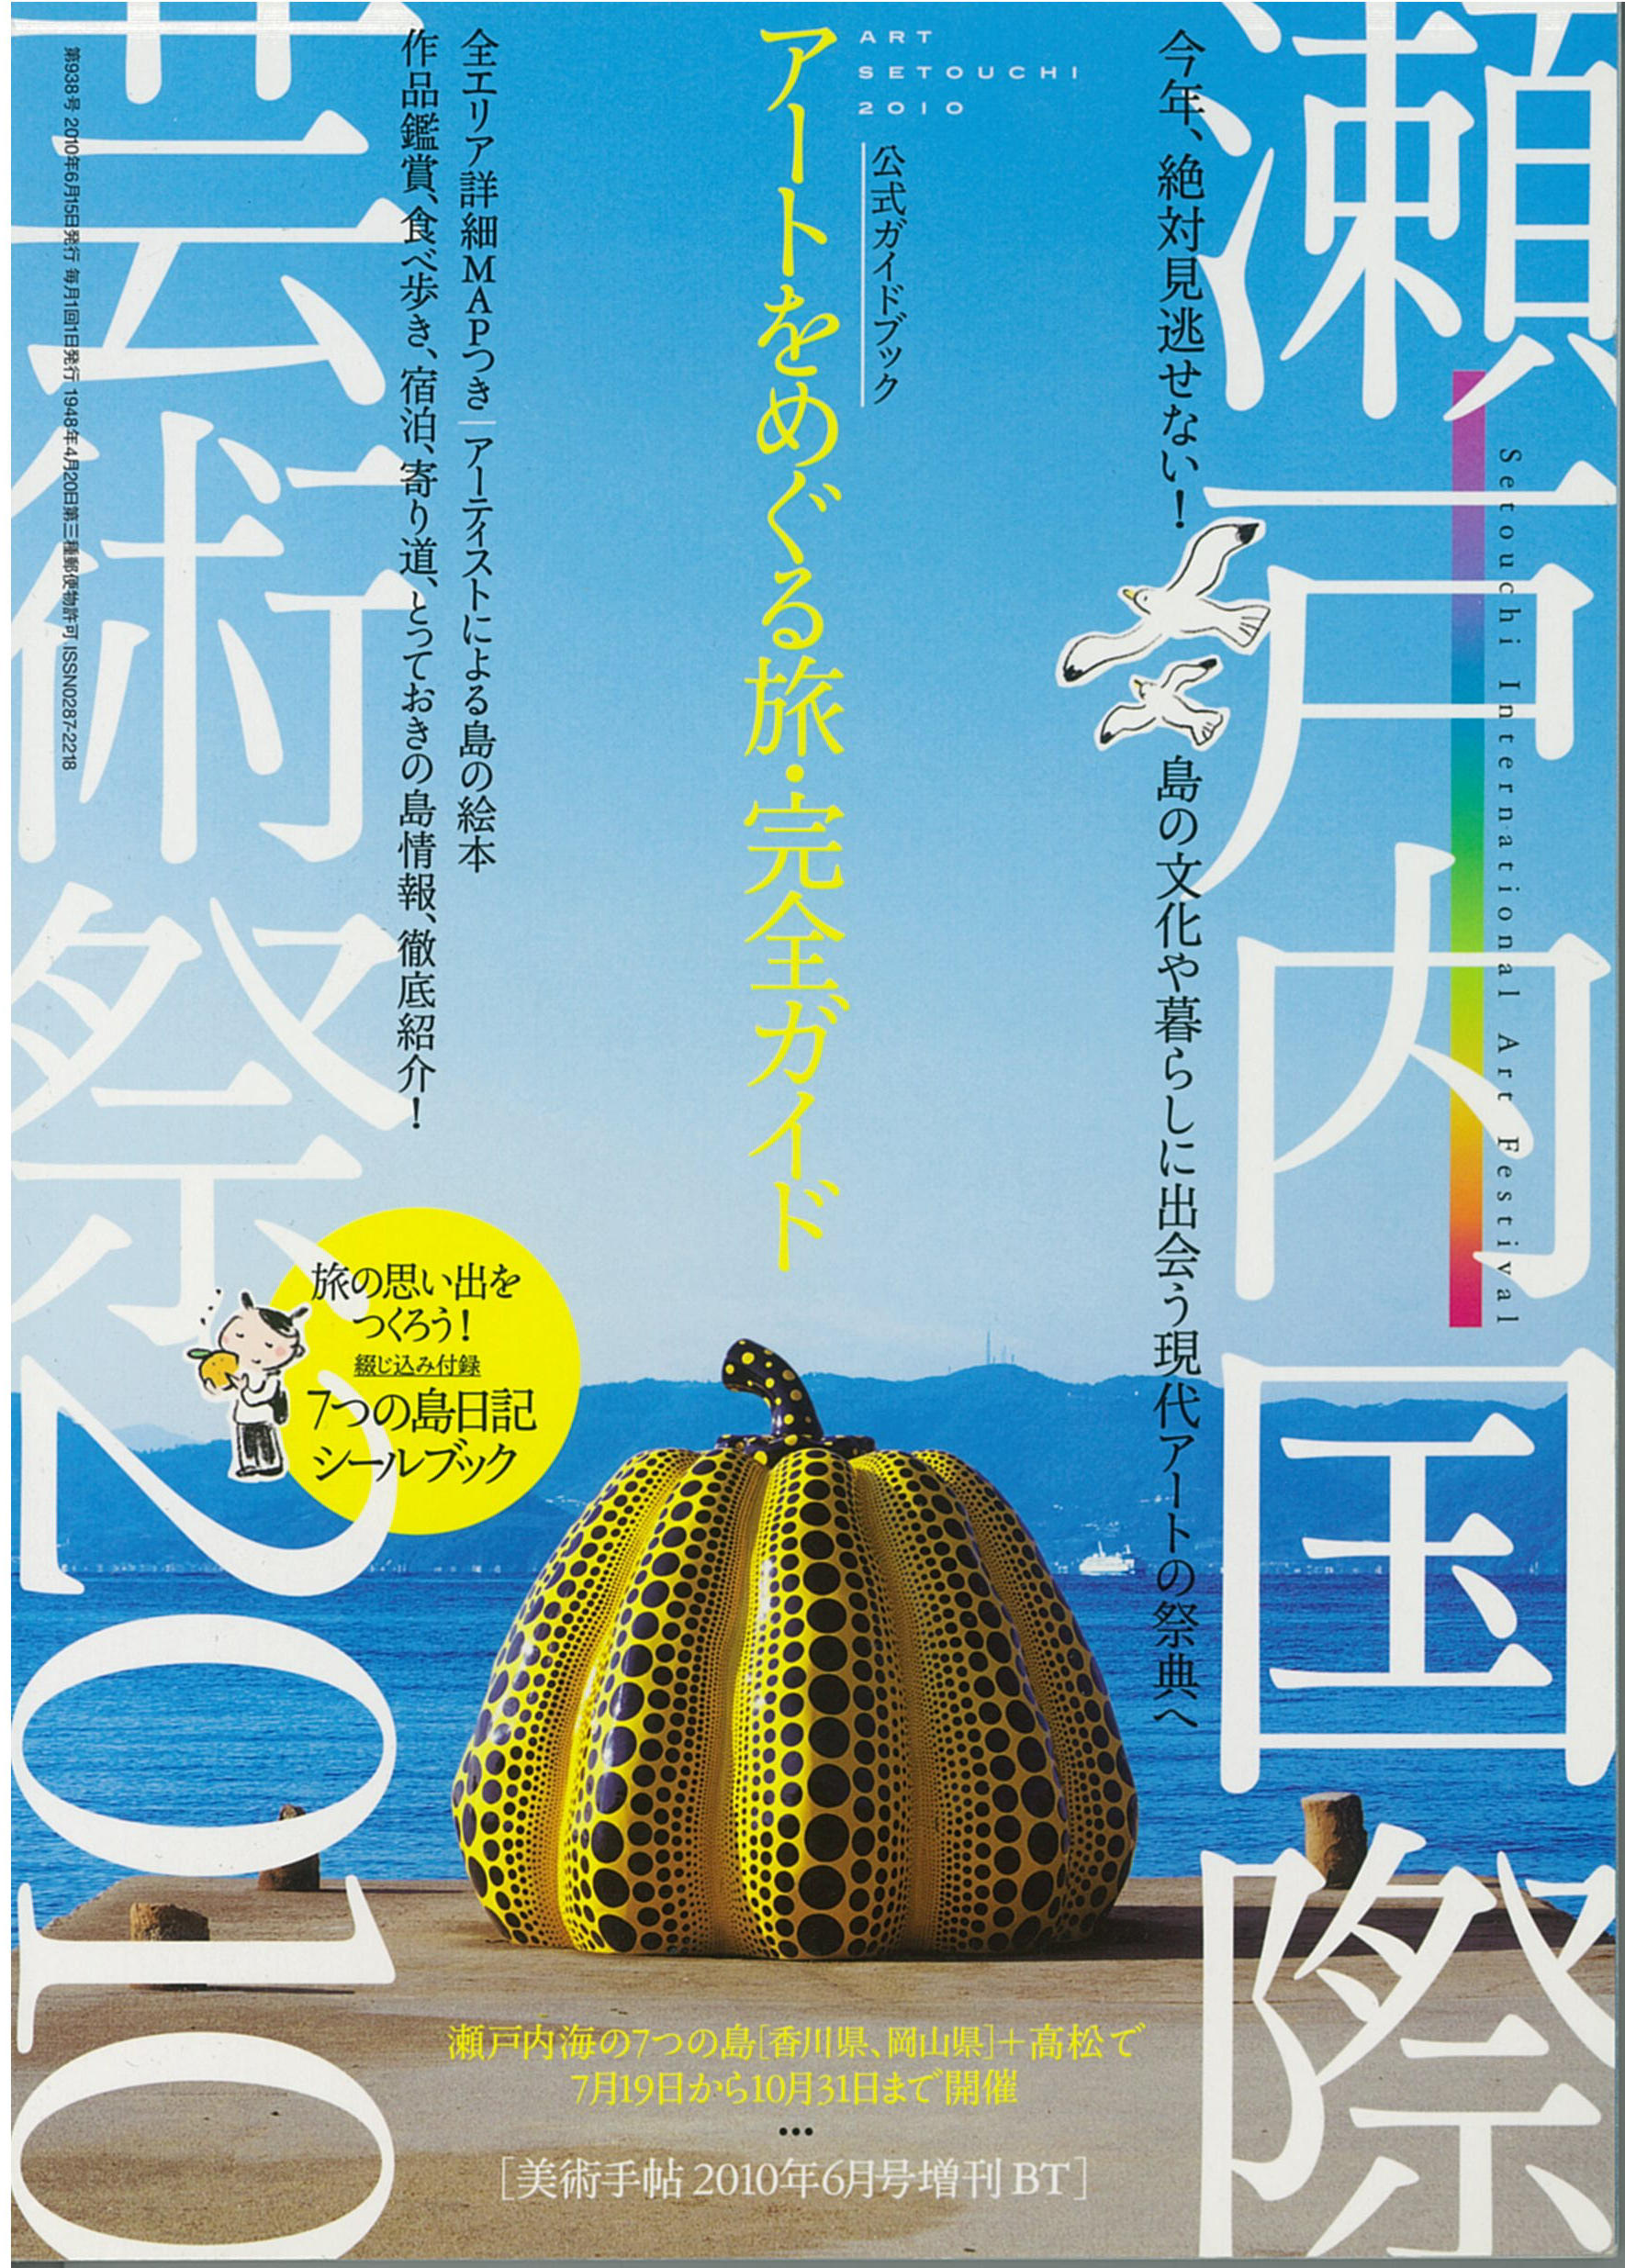 瀬戸内国際芸術祭 2010  公式ガイドブック  アートをめぐる旅・完全ガイド